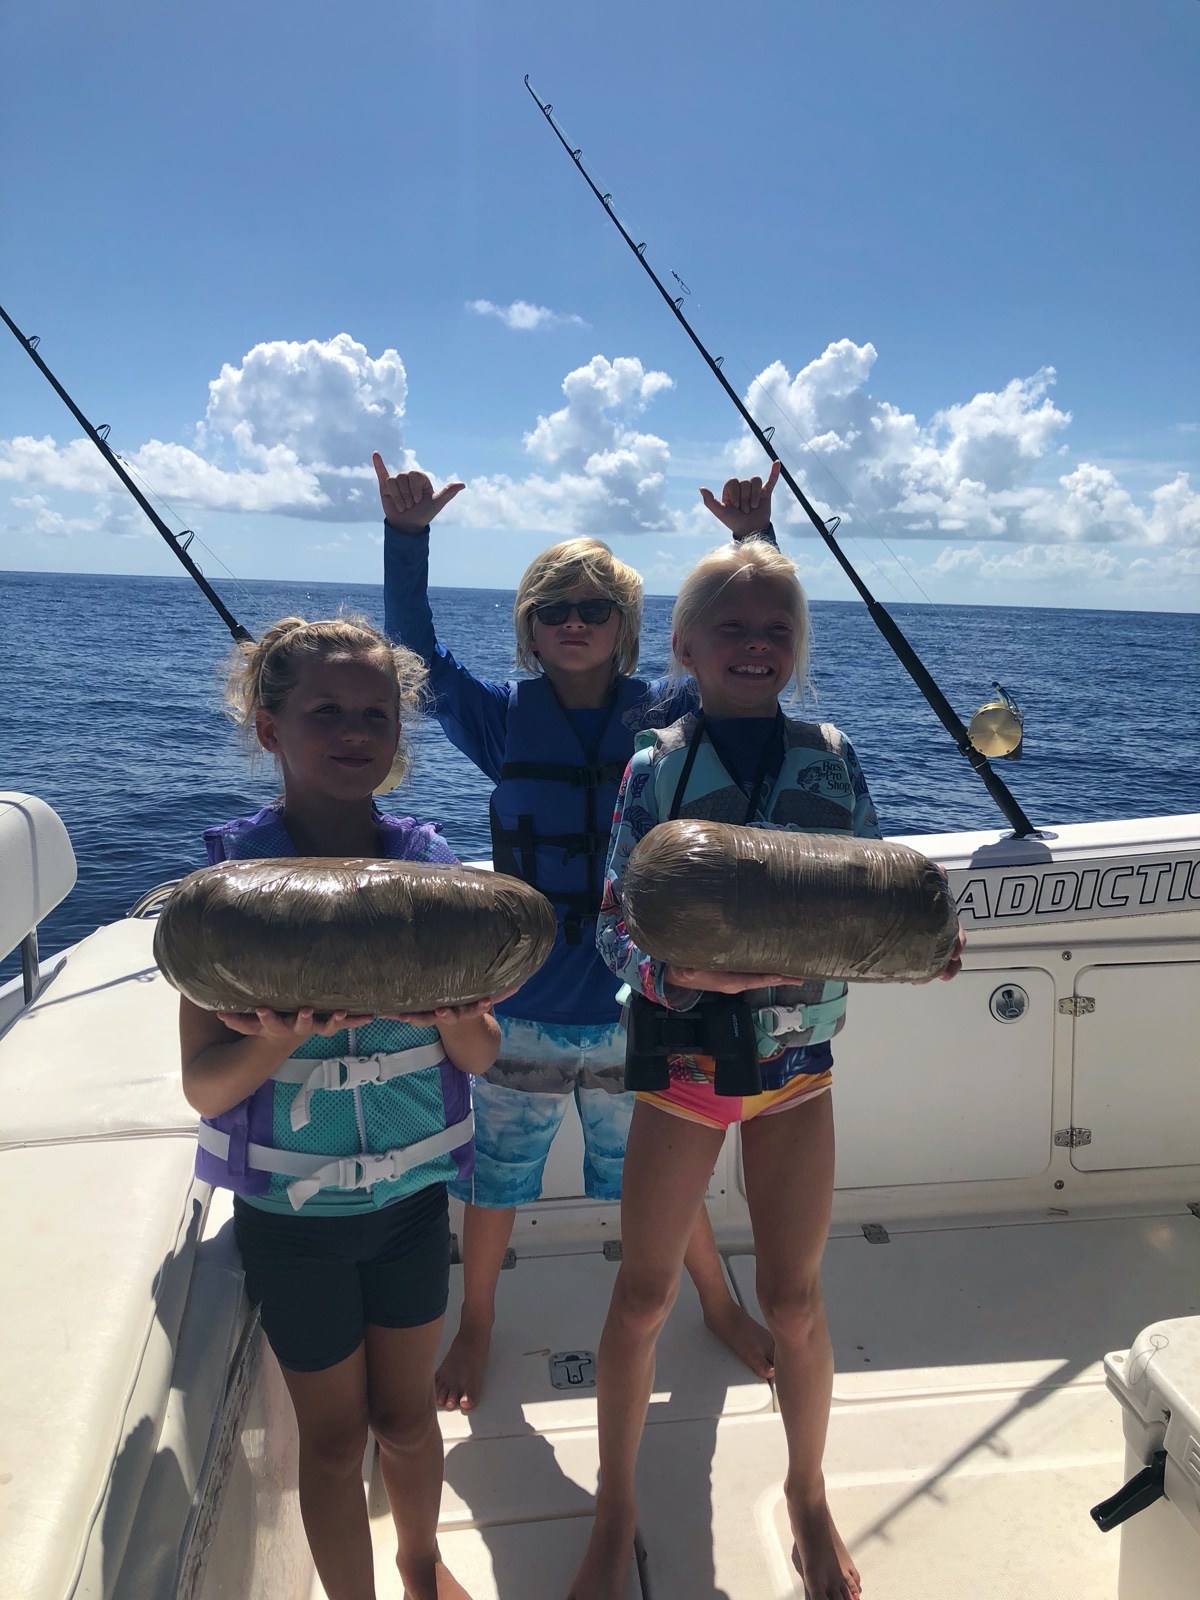 Blackfin Tuna Fishing in Florida
